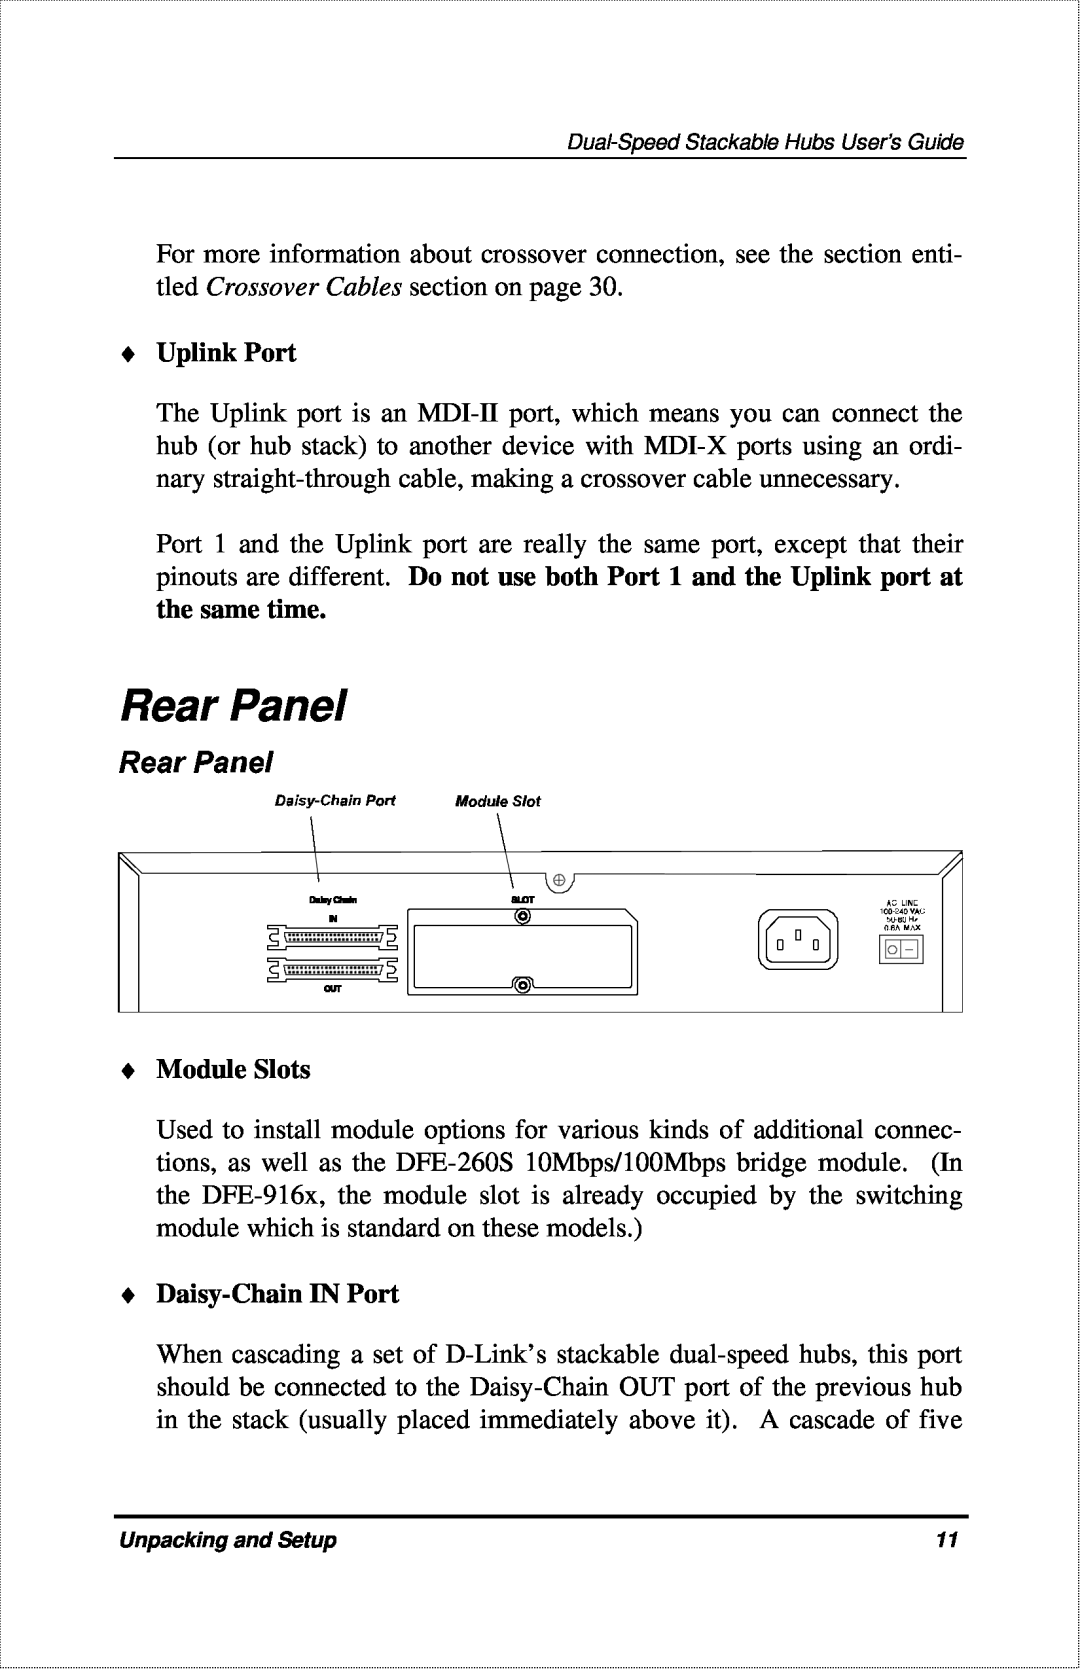 D-Link DFE-916X manual Rear Panel, Uplink Port, Module Slots, Daisy-Chain IN Port 